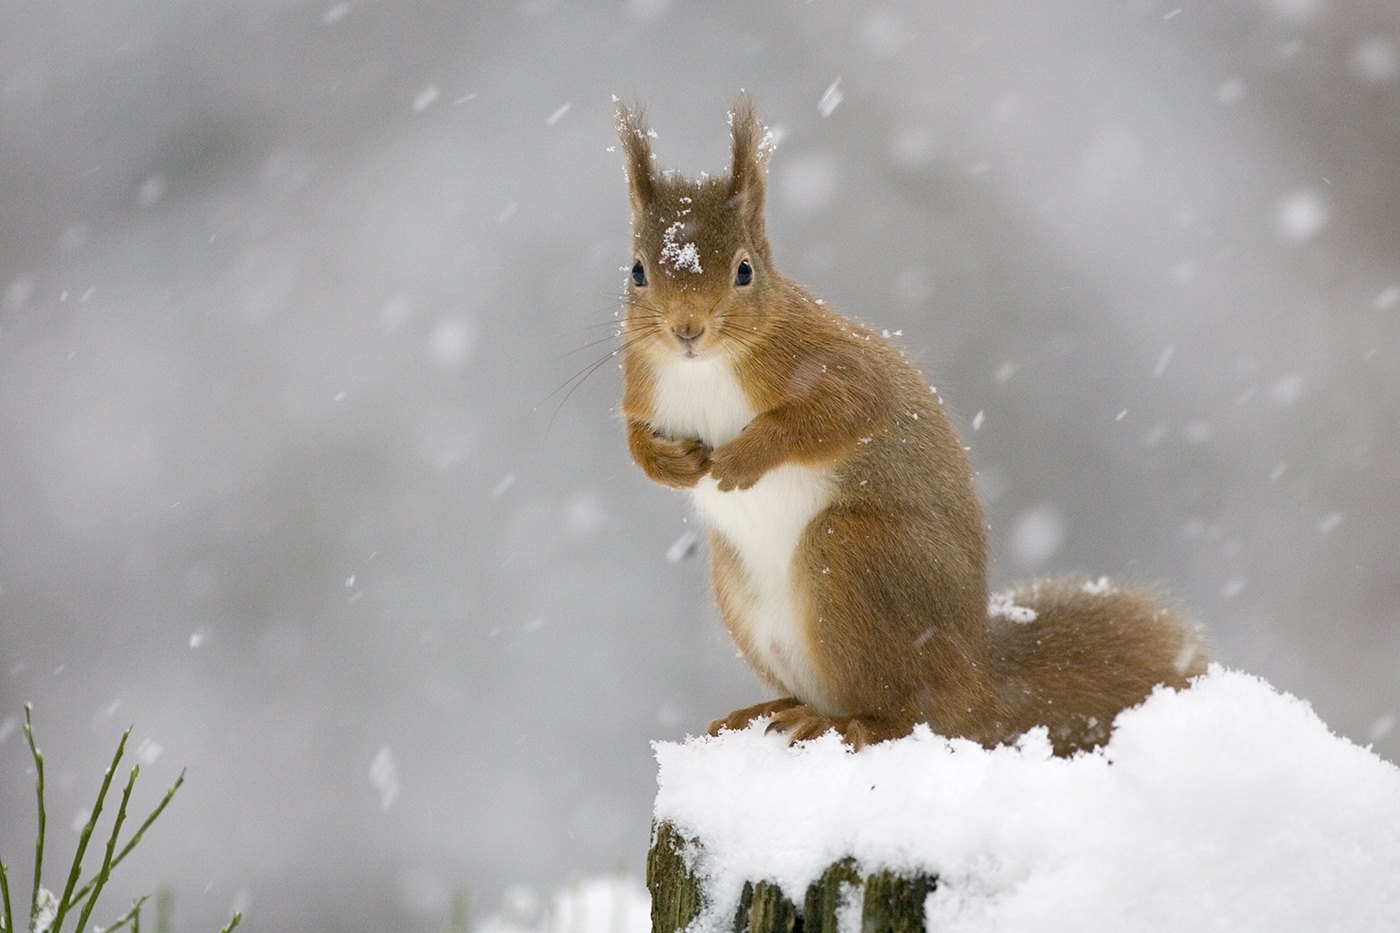 Red squirrel (Sciurus vulgaris) in winter forest, Scotland.